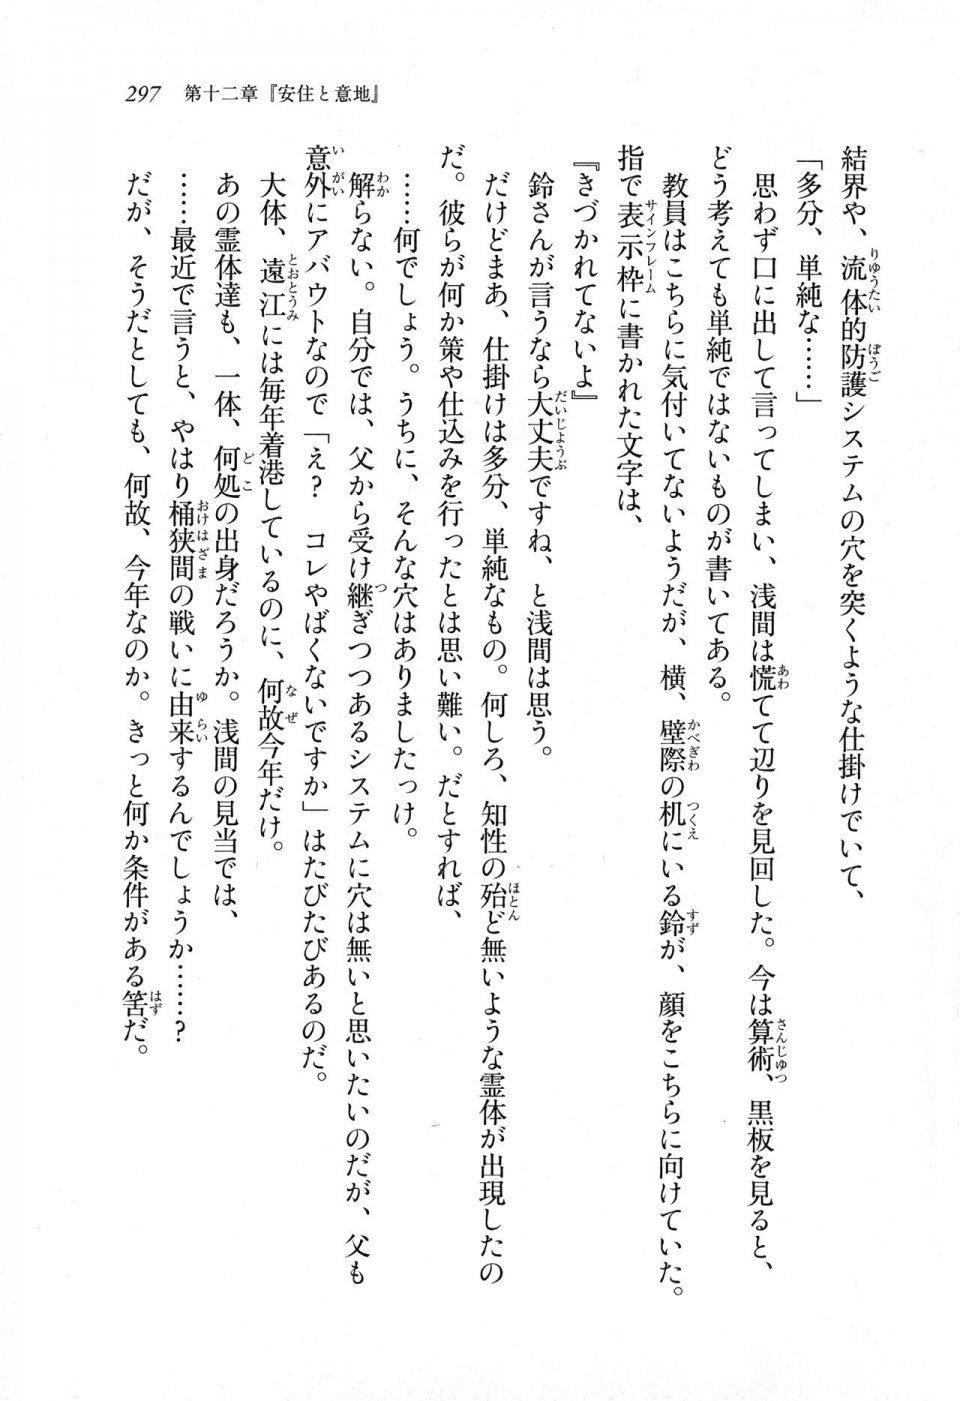 Kyoukai Senjou no Horizon LN Sidestory Vol 1 - Photo #295